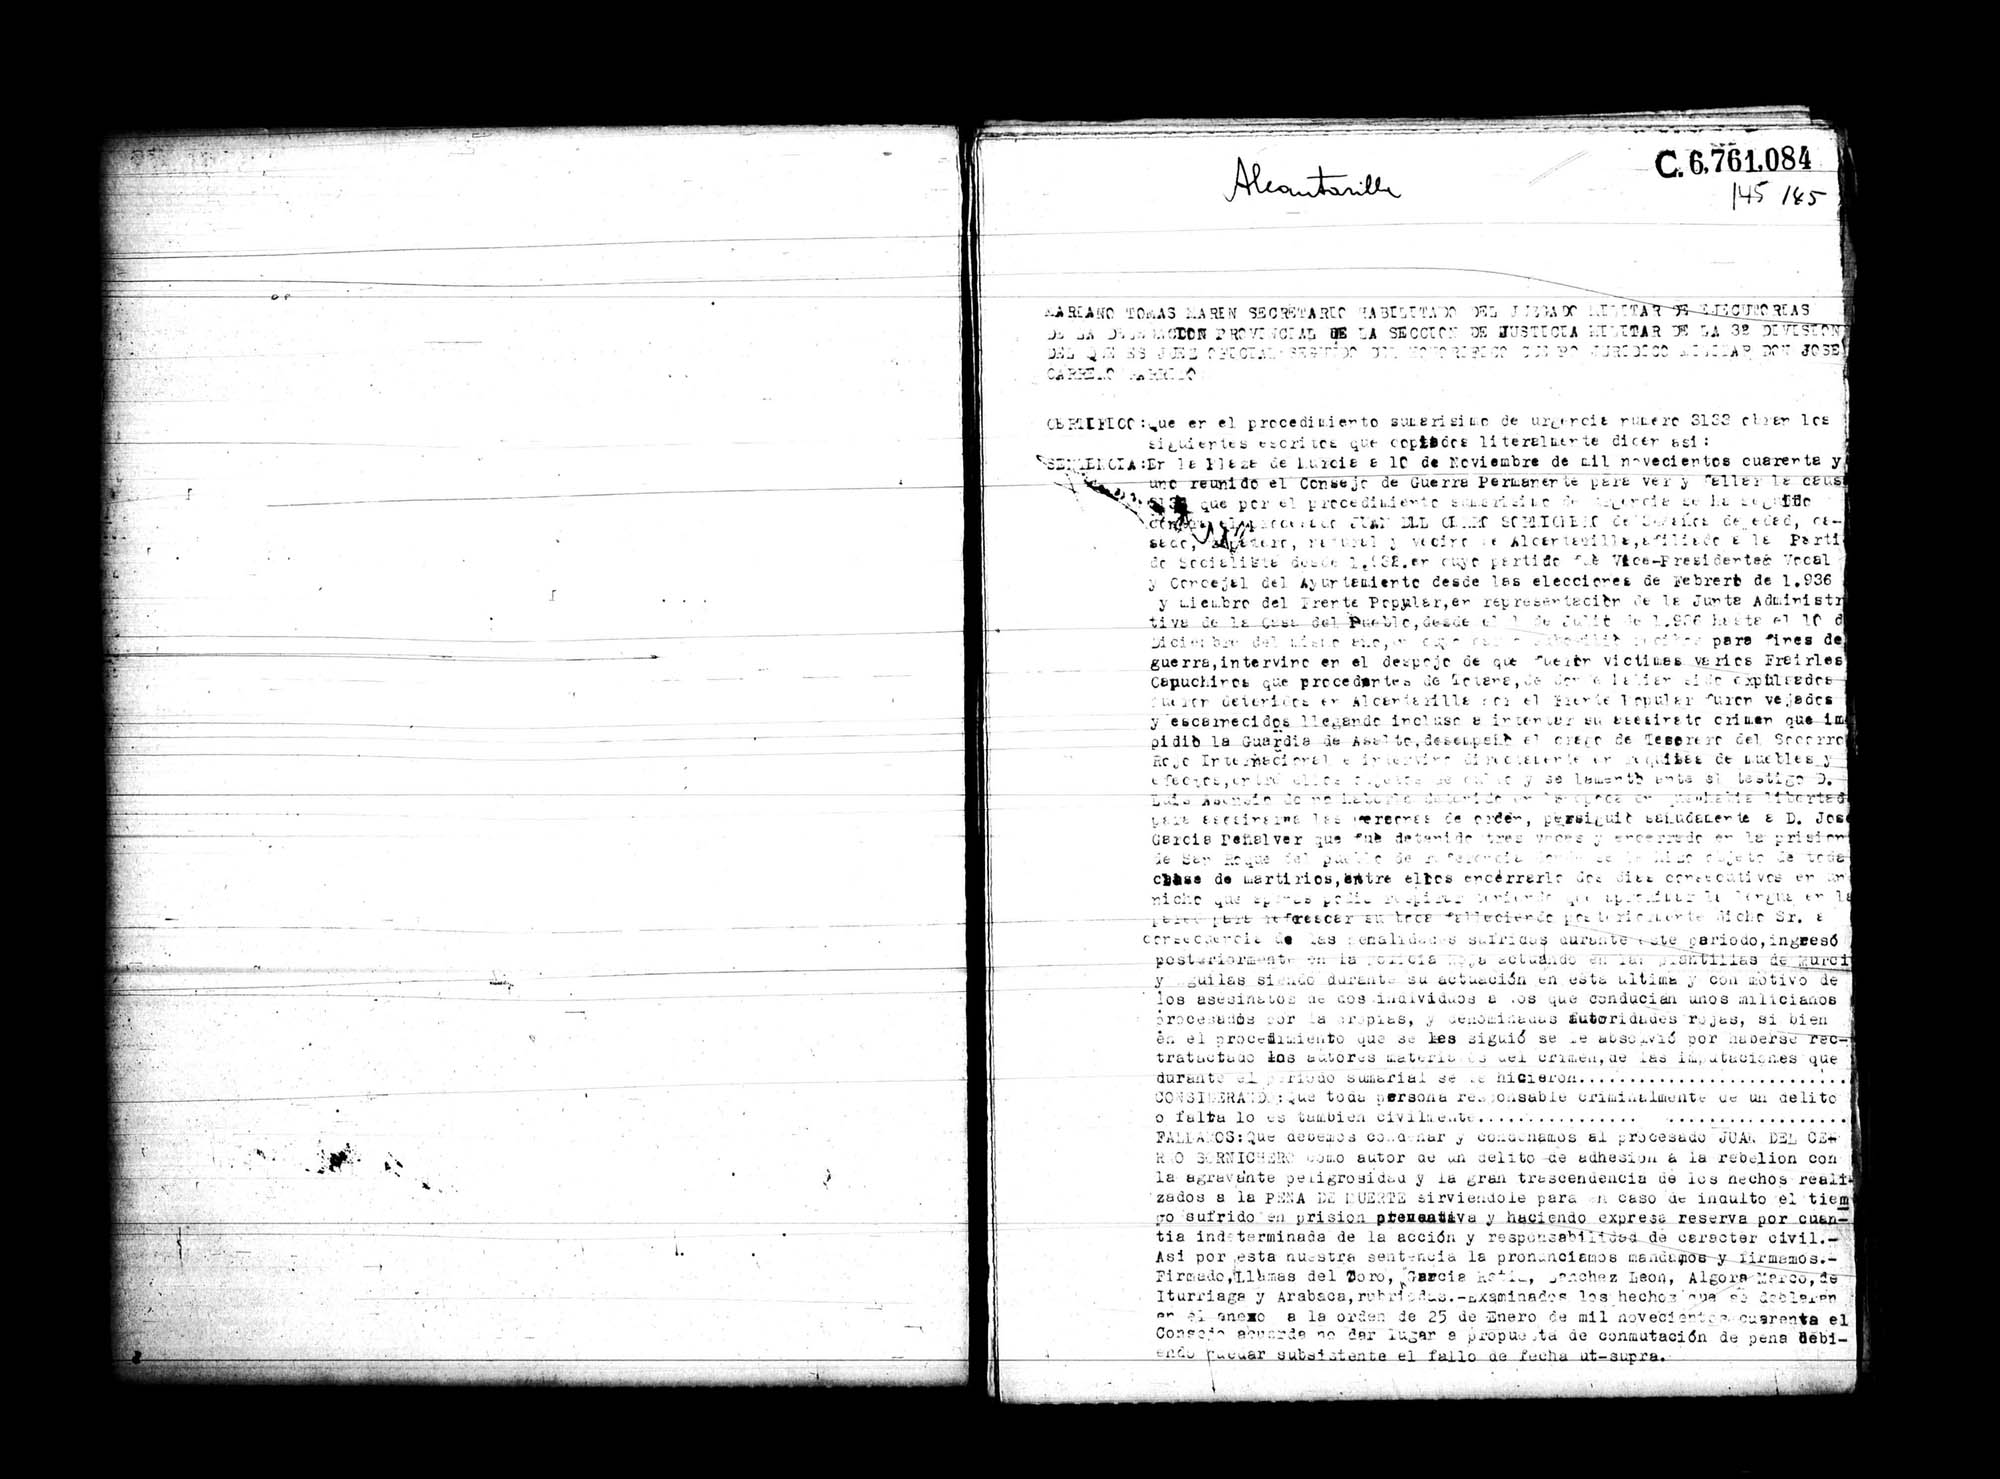 Certificado de la sentencia pronunciada contra Juan del Cerro Sornichero, causa 3133, el 10 de noviembre de 1941 en Murcia.